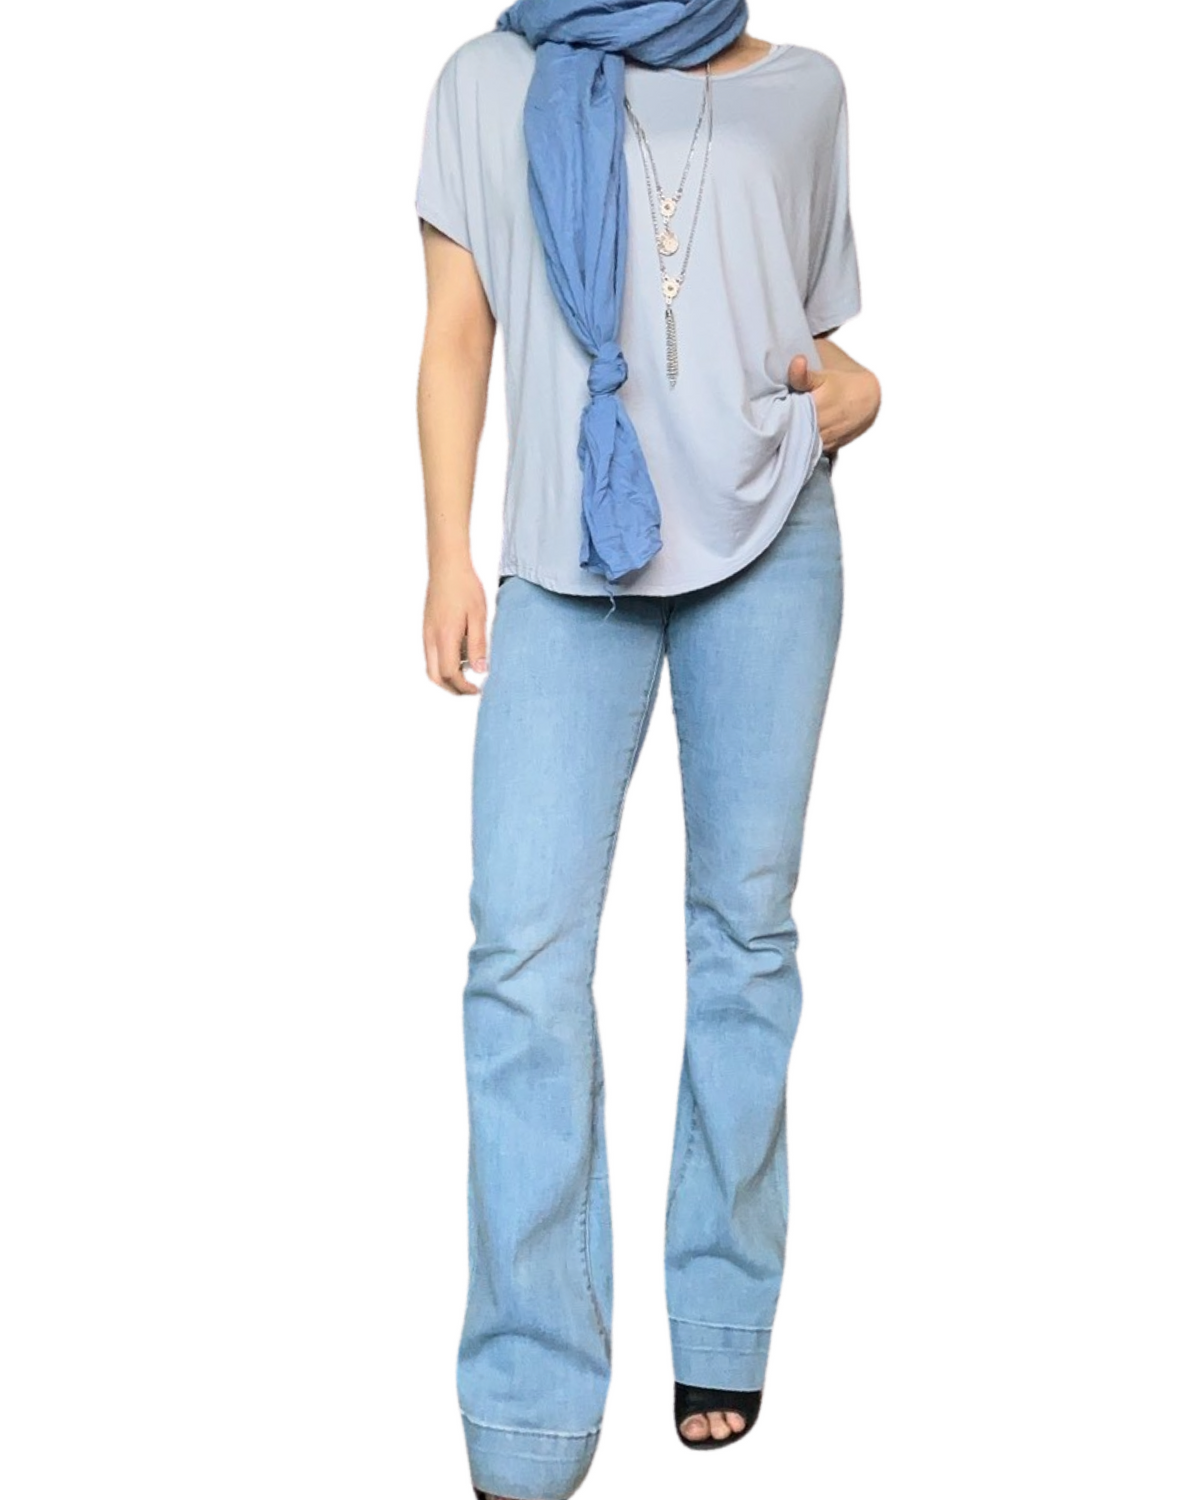 T-shirt couleur unie pour femme avec jean flare bleu clair.